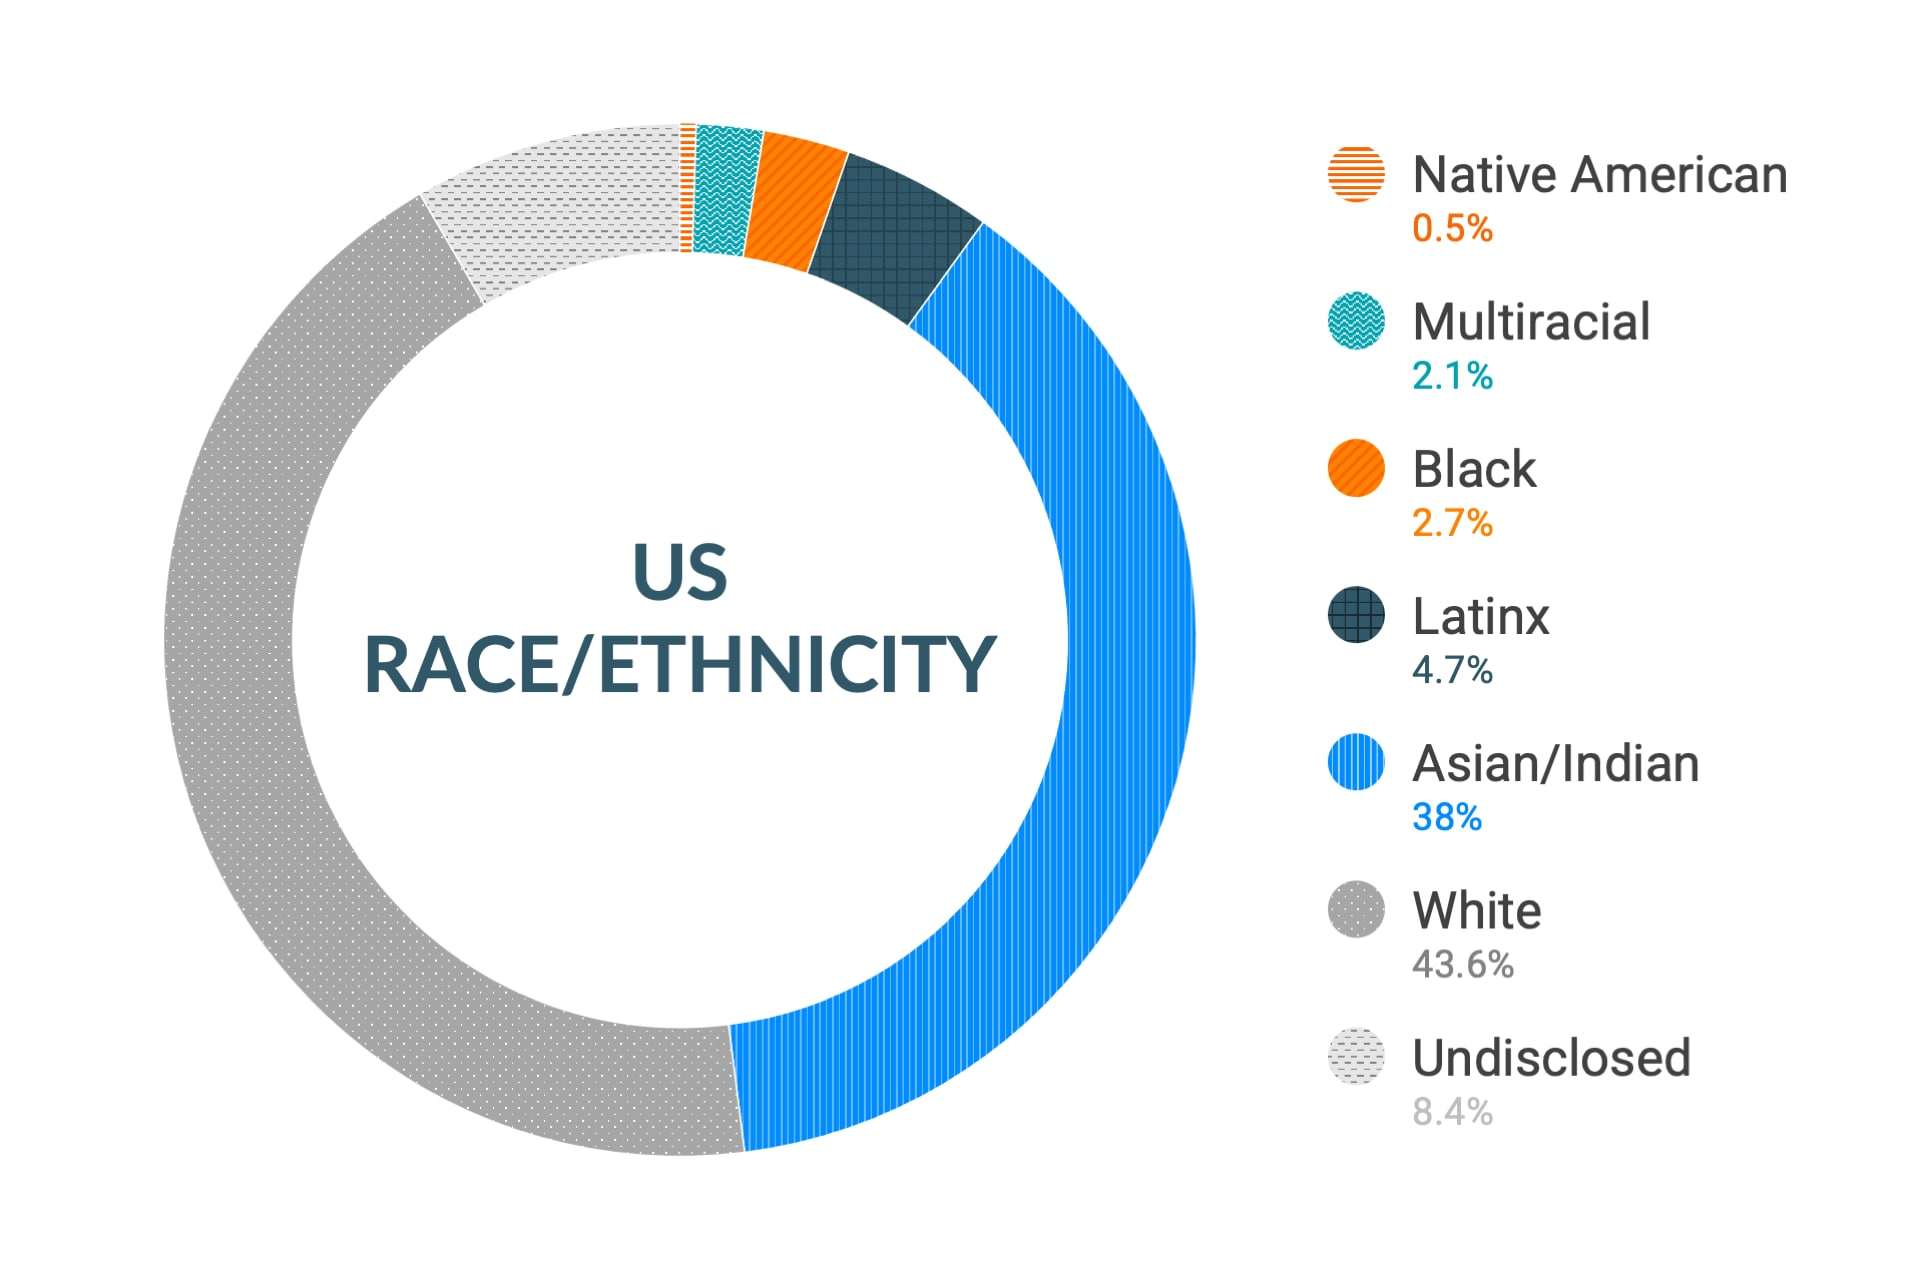 Dati Cloudera su diversità e inclusione etnica negli Stati Uniti: dipendenti nativi americani 0,5%, multietnici 2,2%, afroamericani 2,8%, latinoamericani 4,9%, asiatici e indiani 36,4%, caucasici 44,6%, non dichiarato 8,4%.